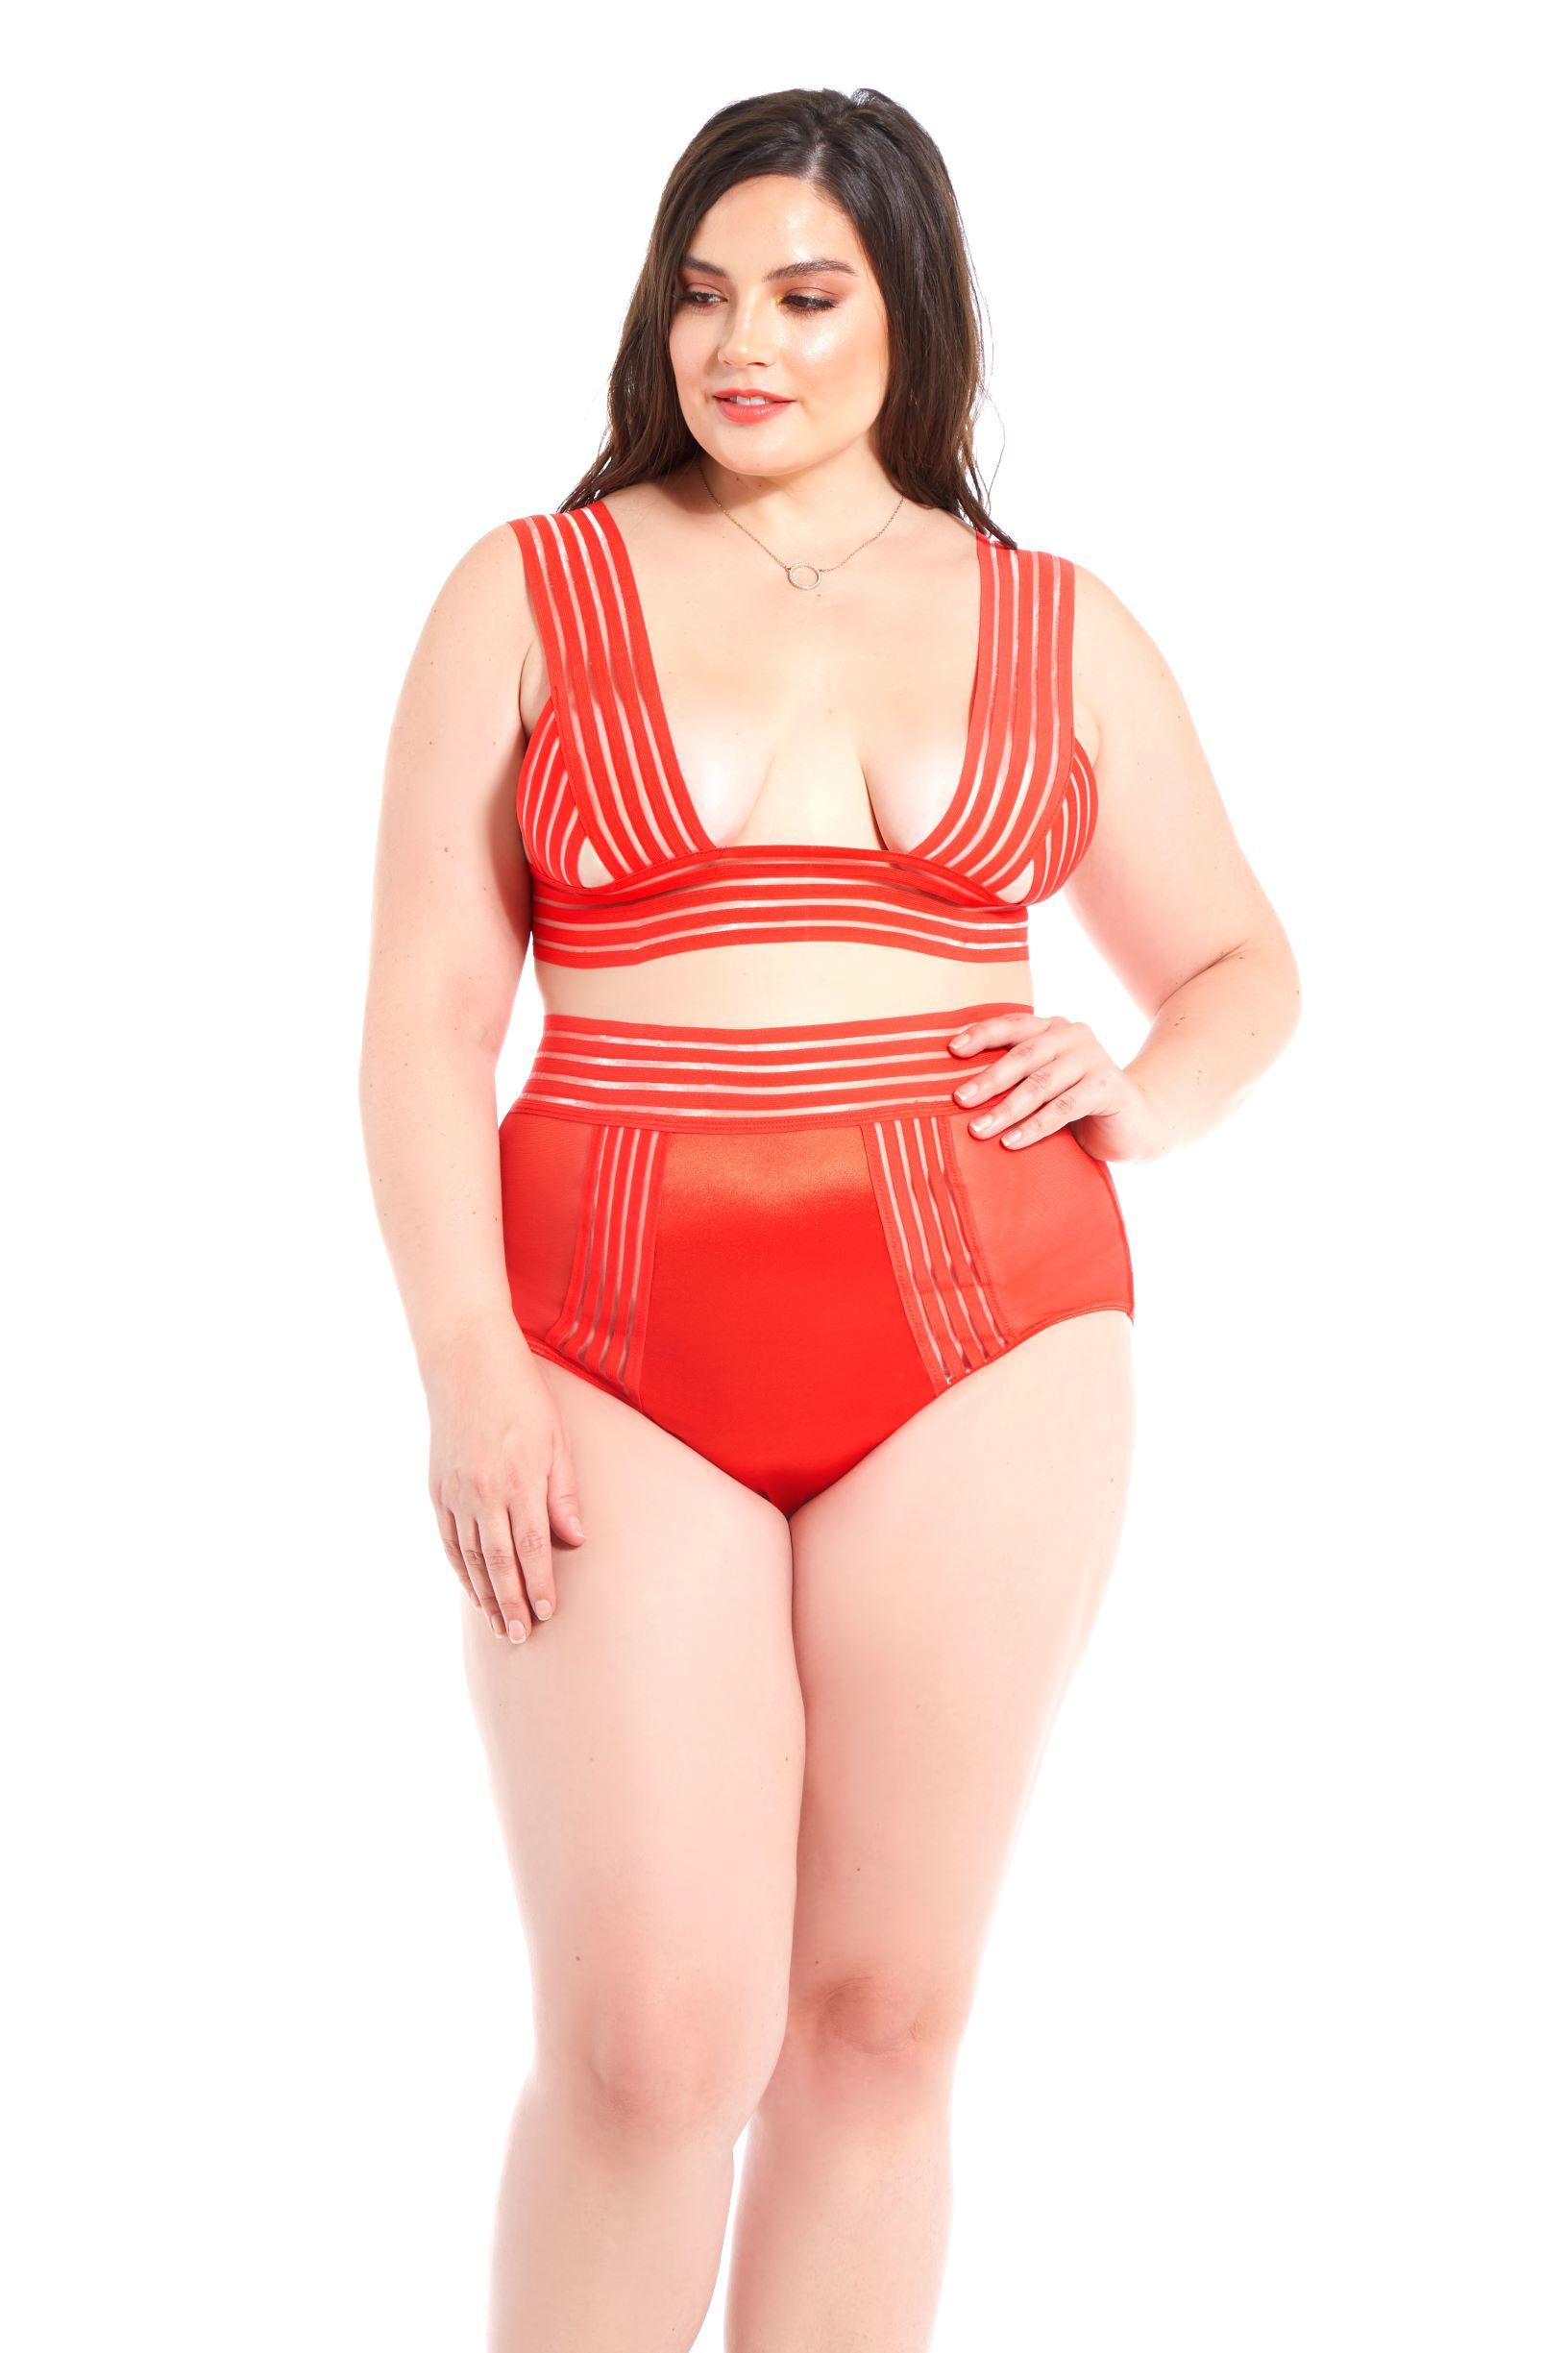 Plus size red bra & panty set